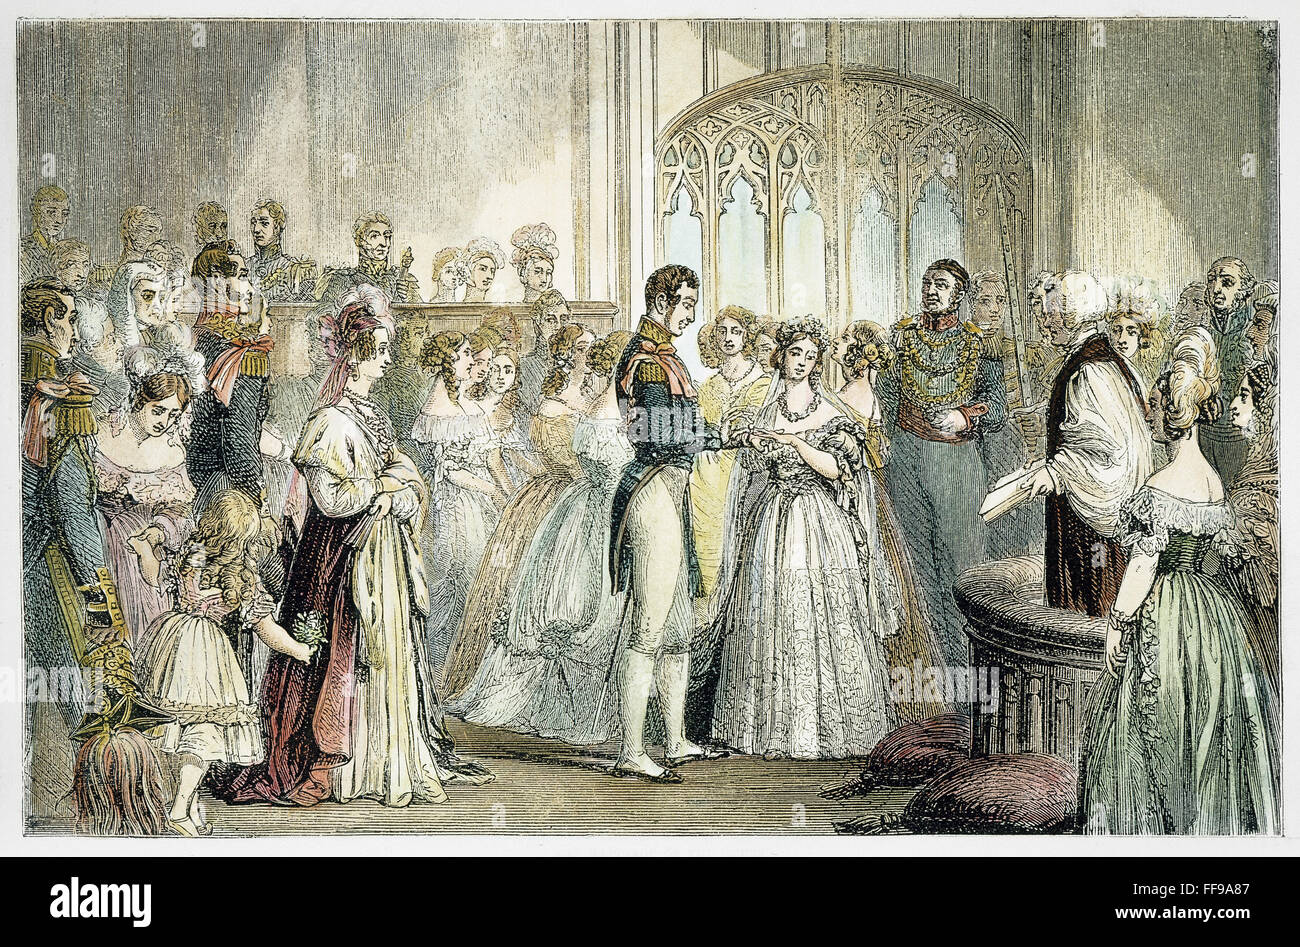 La boda de la reina Victoria. /Nel la boda de la Reina Victoria de Inglaterra y el Príncipe Alberto de Sajonia-Coburgo-Gotha, el 10 de febrero de 1840. El grabado en madera, del siglo XIX. Foto de stock